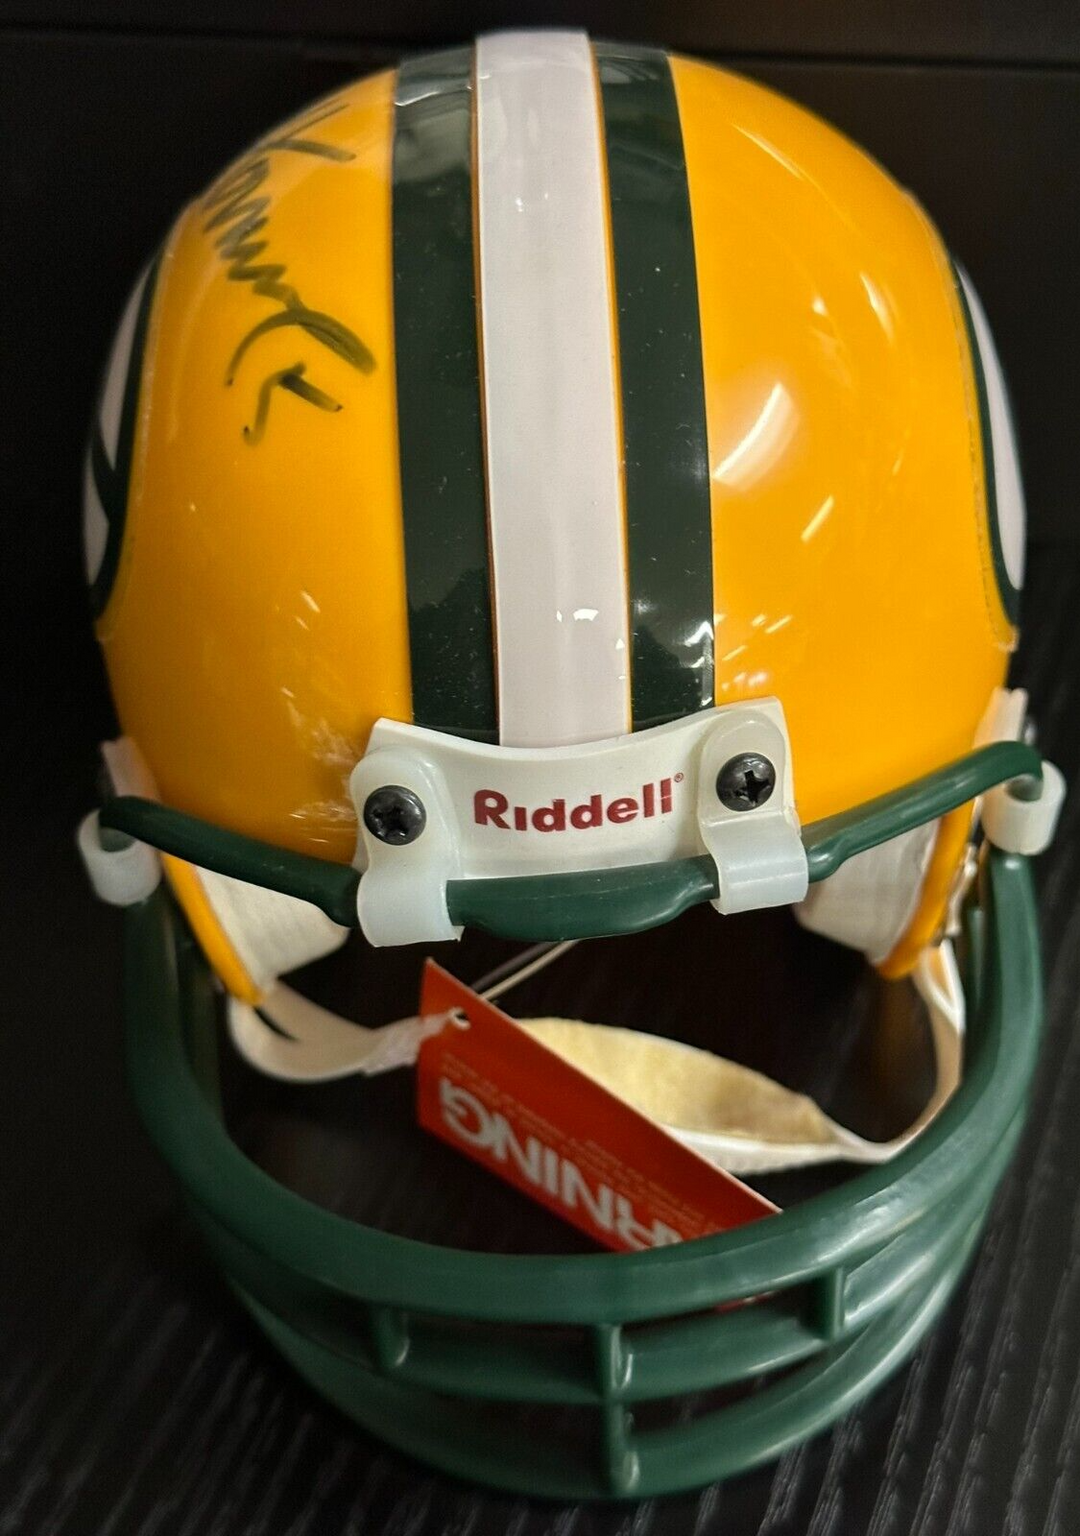 Paul Hornung Autographed Green Bay Packers Mini Helmet HOF